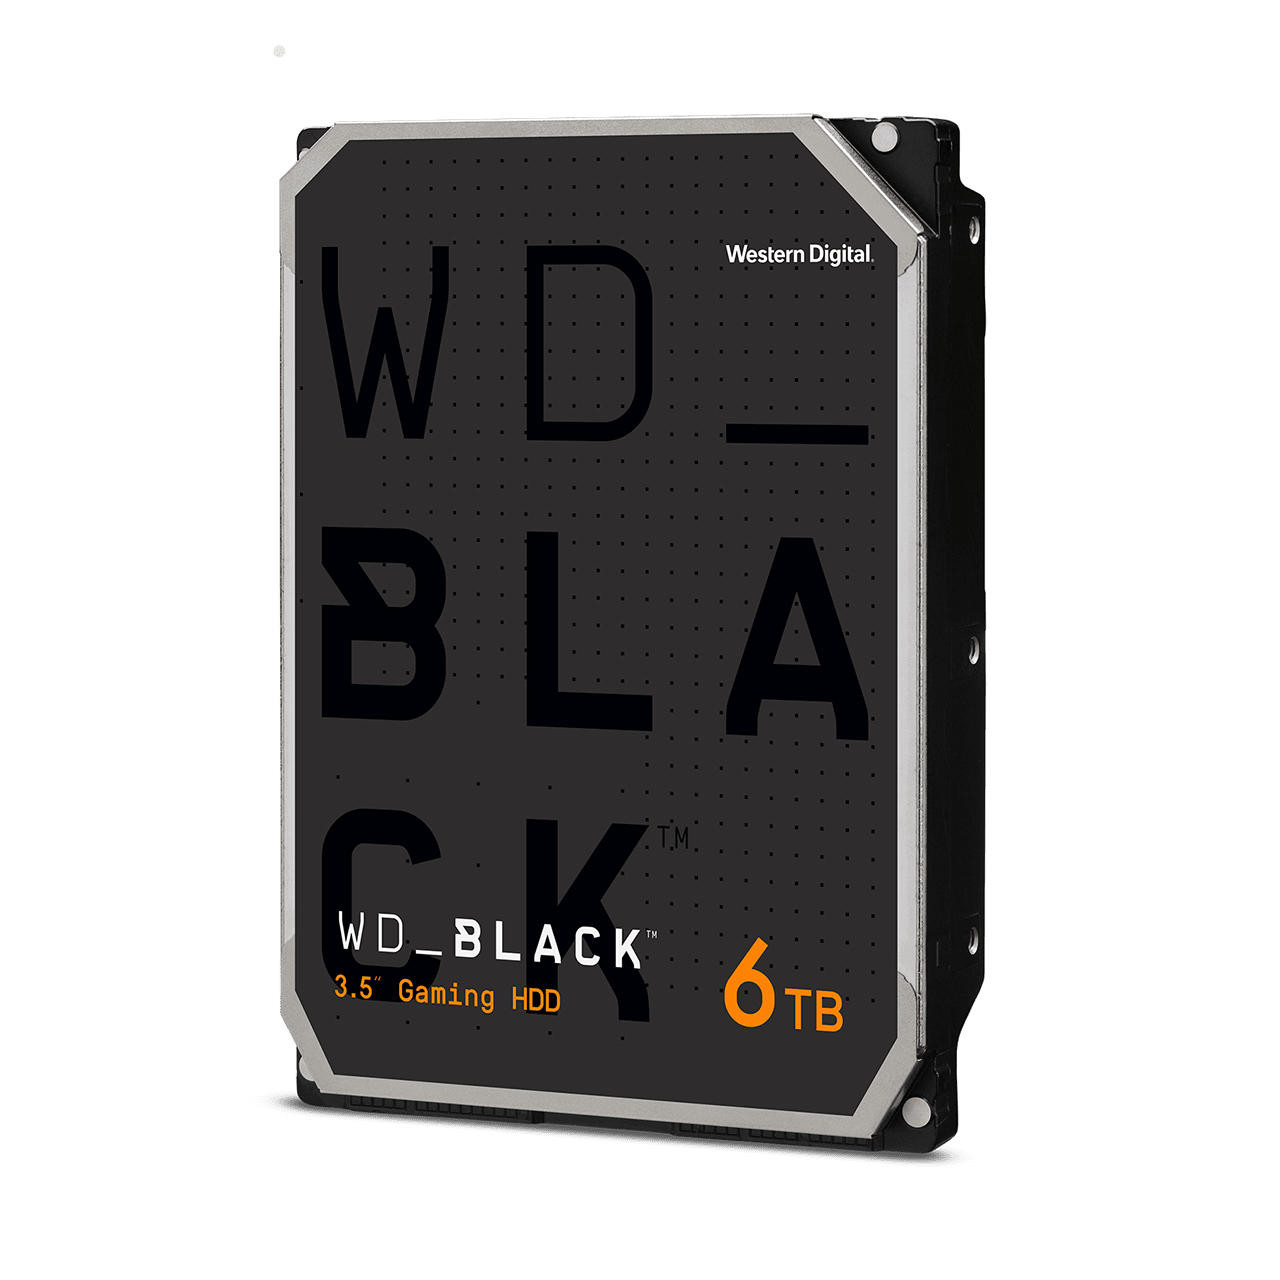 WD Black 6TB WD6004FZWX